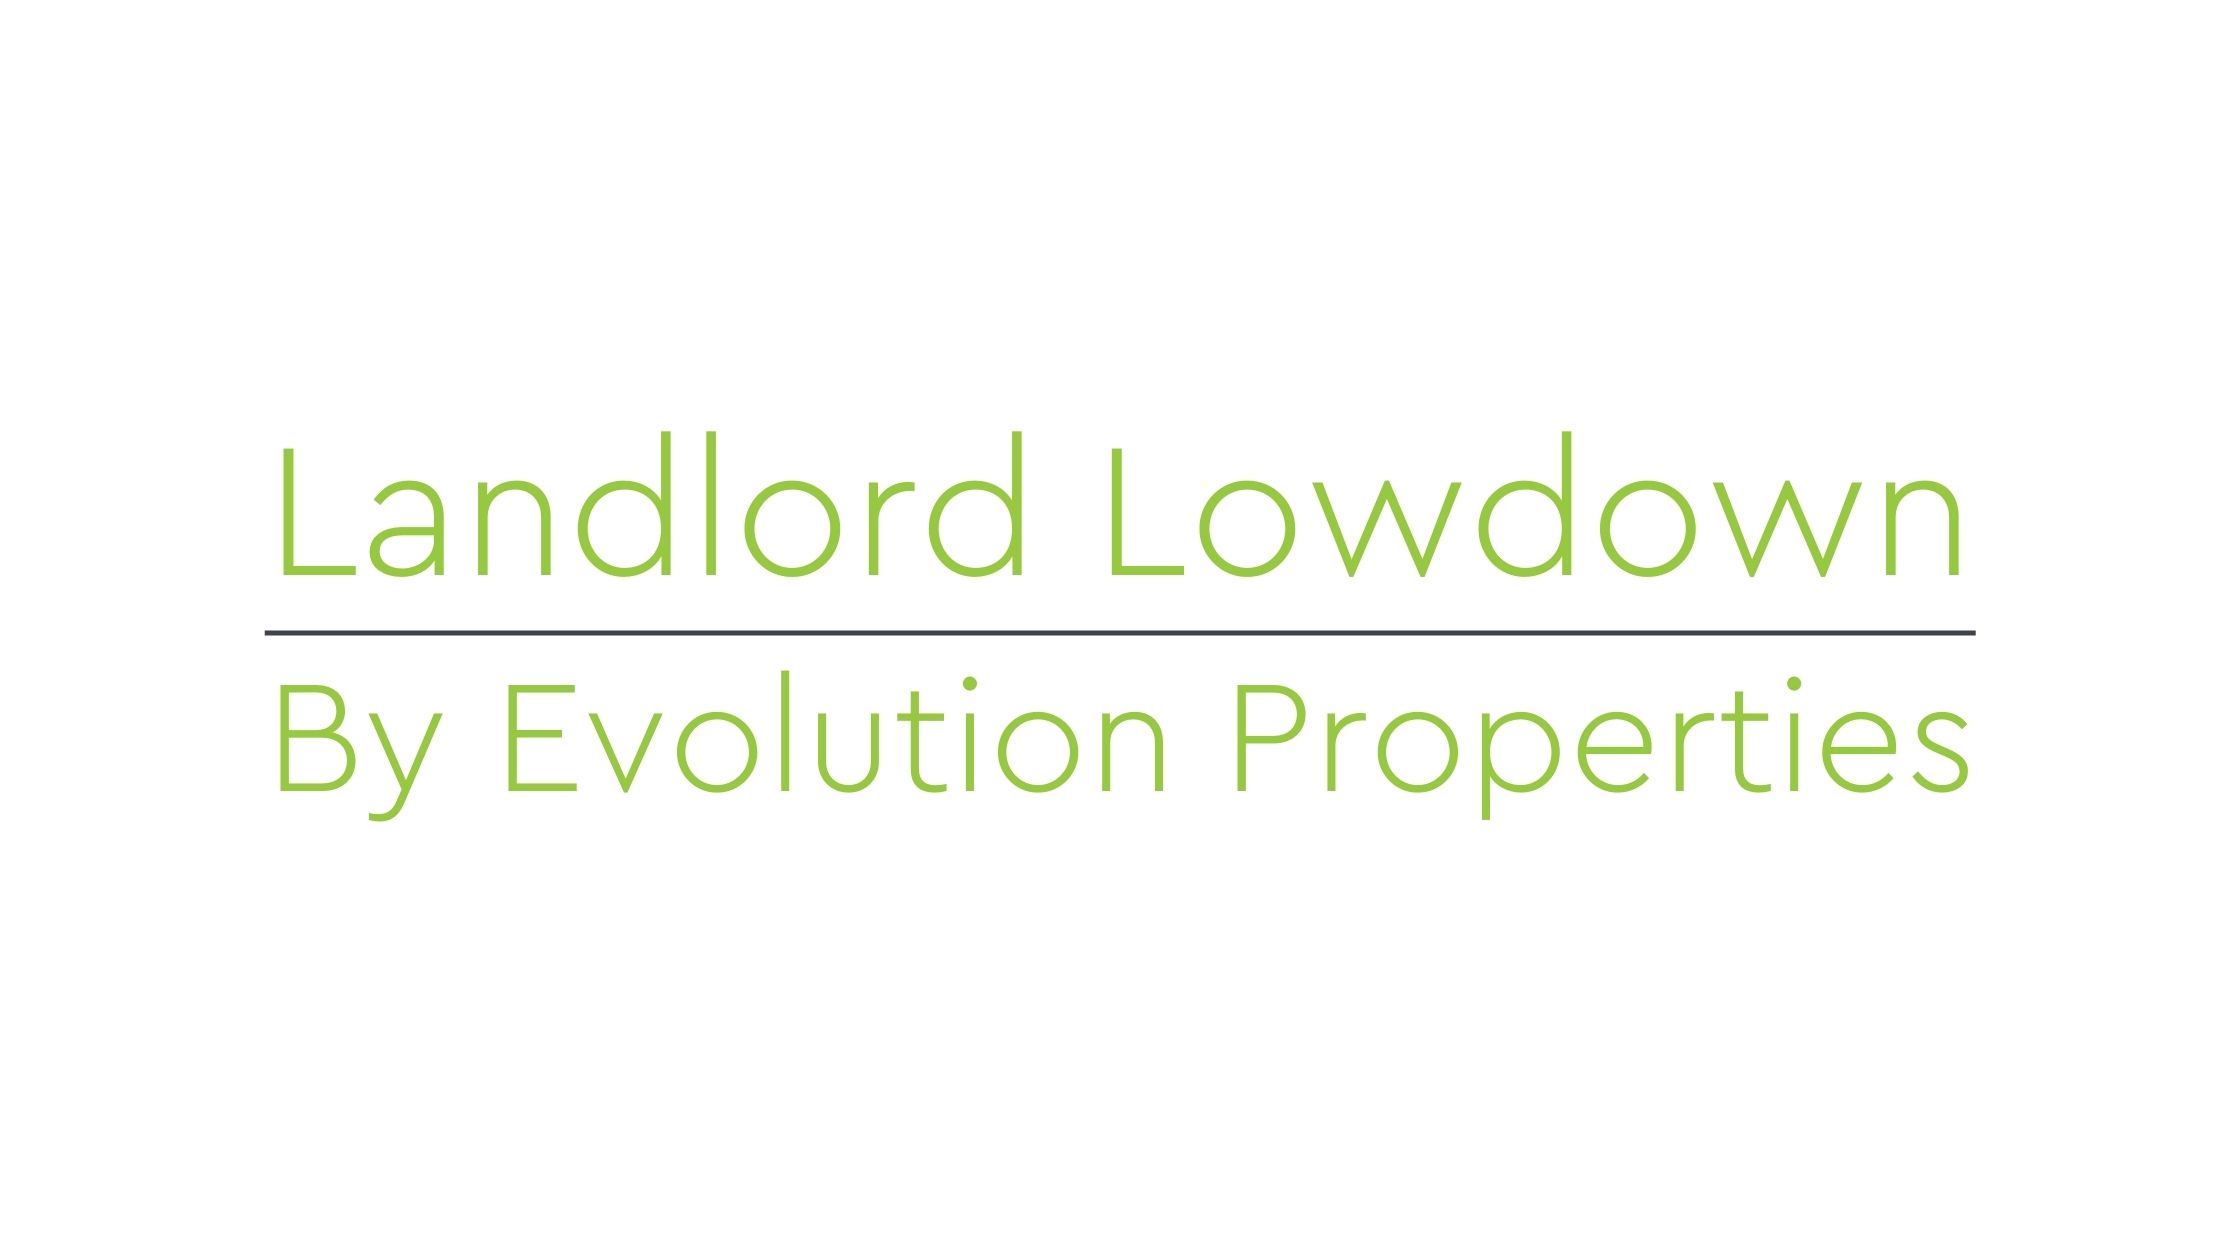 Landlord Lowdown